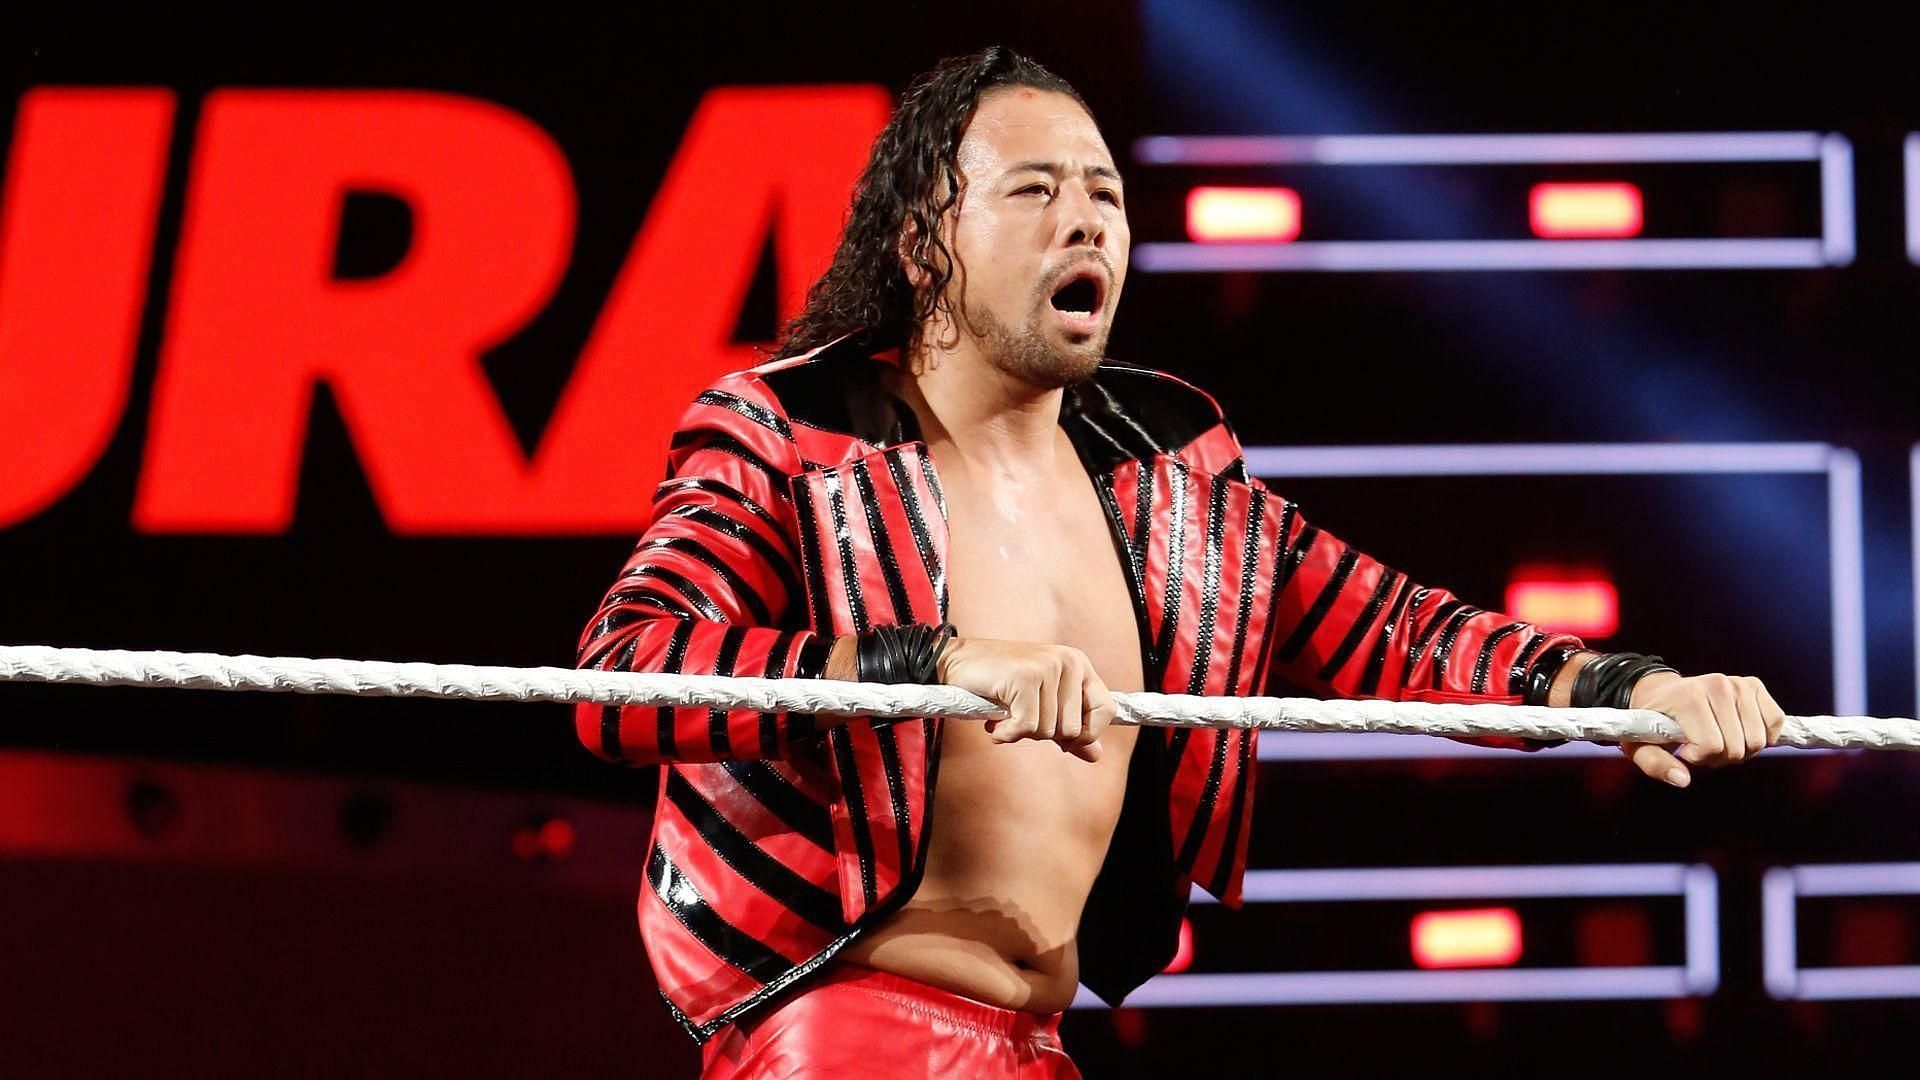 Shinsuke Nakamura will face The Great Muta at NJPW